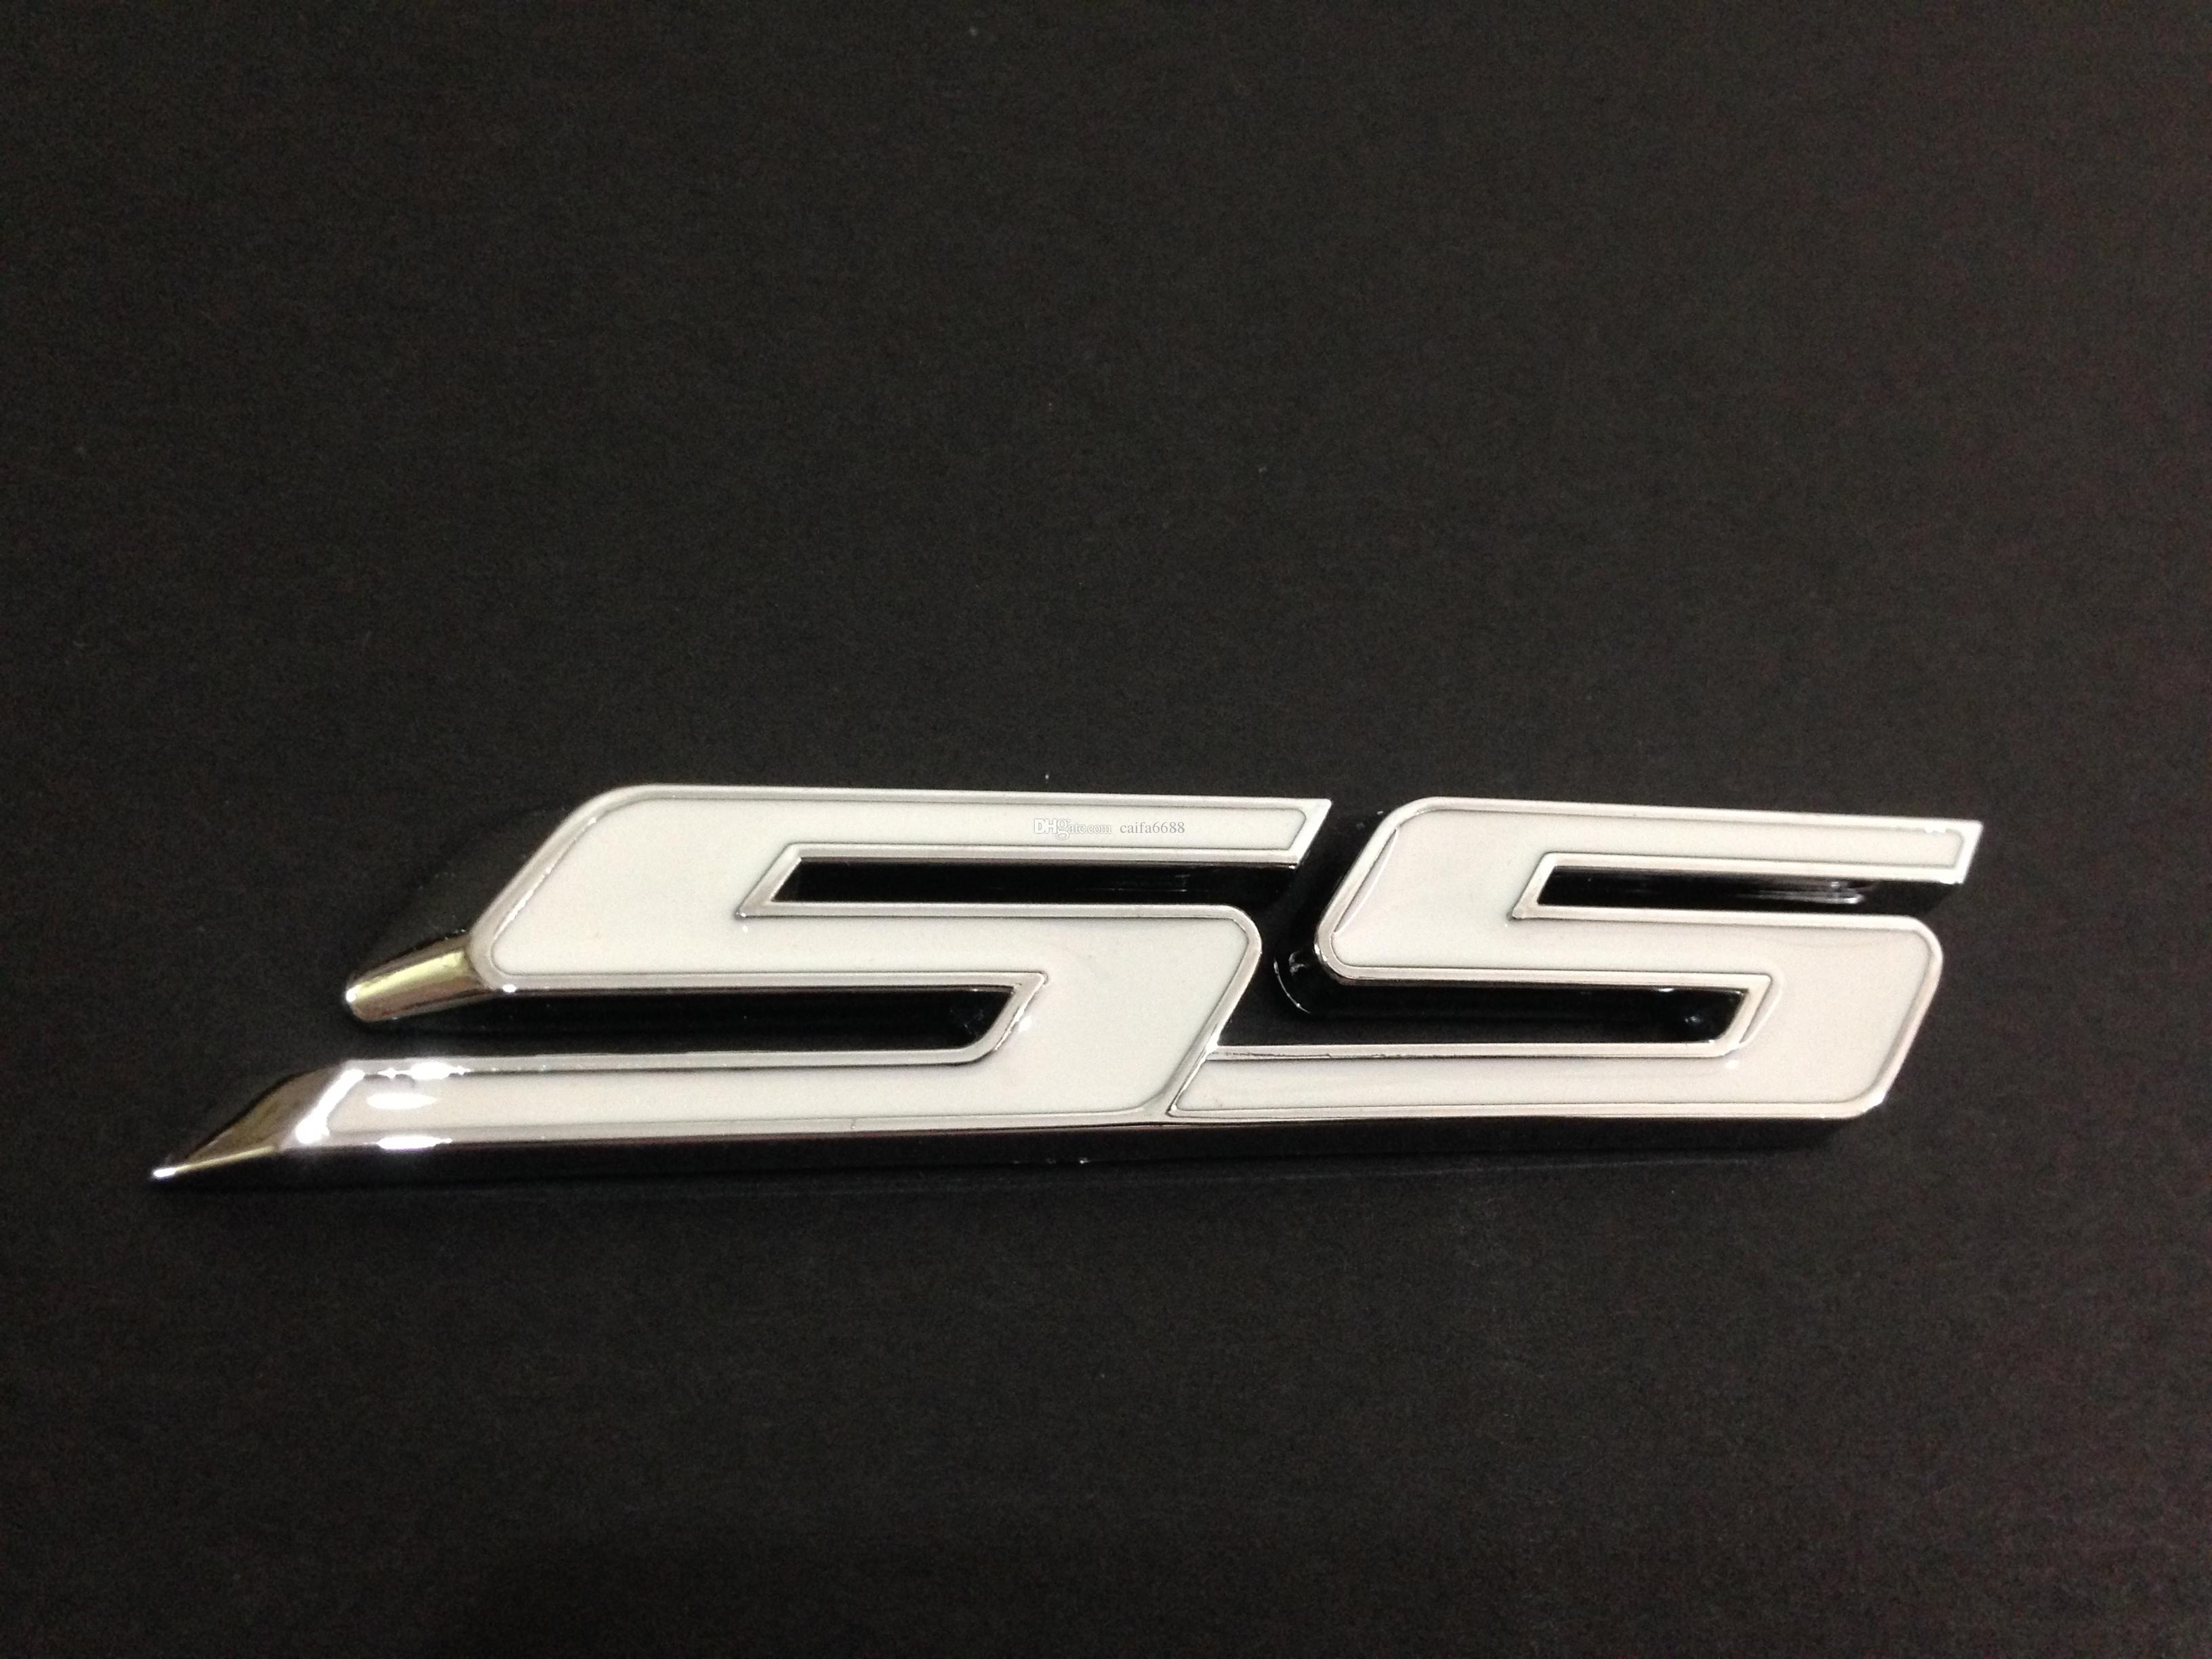 Camaro SS Logo - NEW Chrome & White Camaro SS Emblem Logo Canada 2019 From Caifa6688